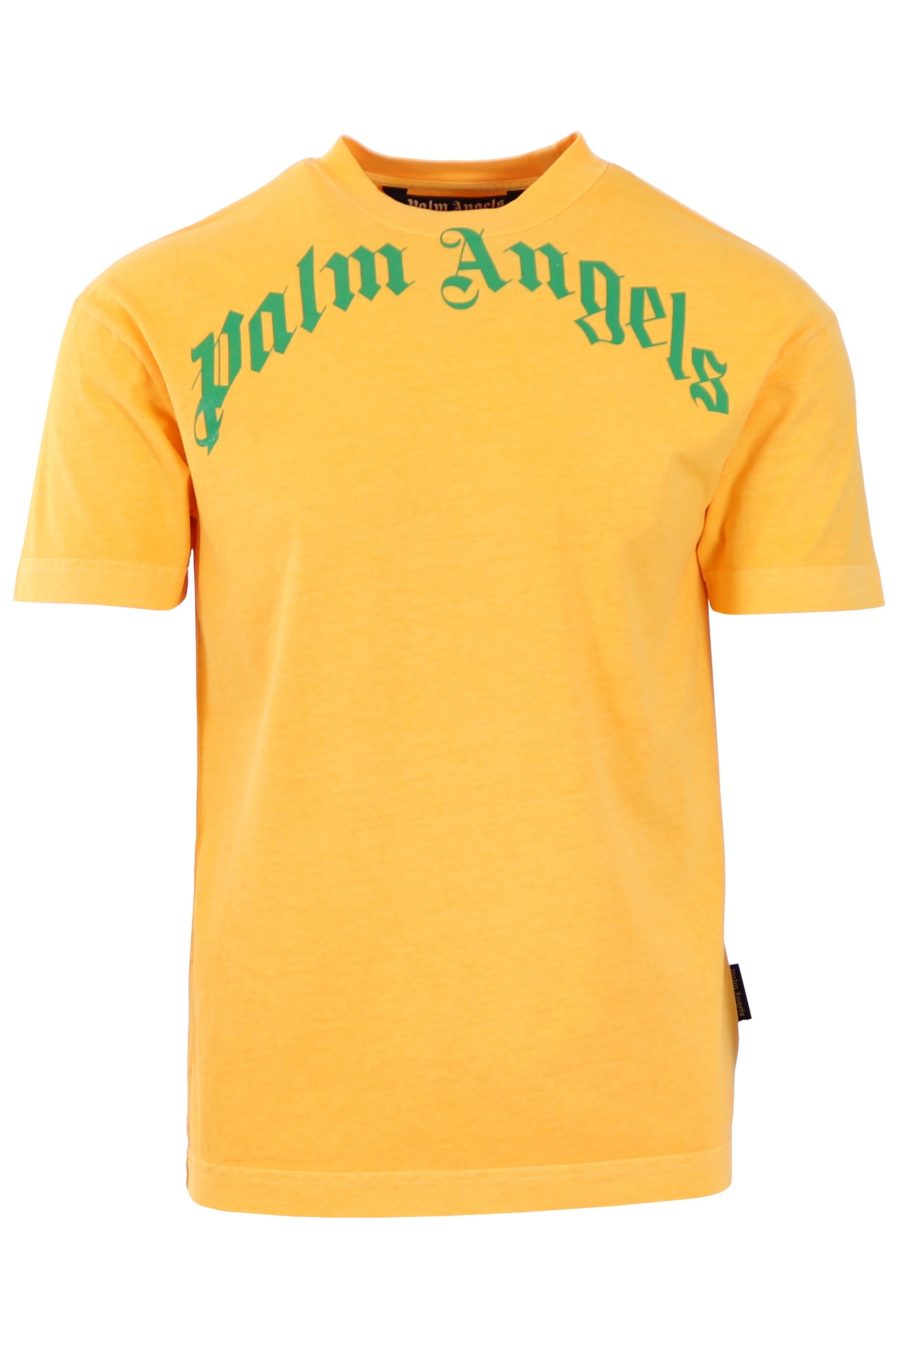 T-shirt Palm Angels gelb logo grün - 594db2545daa60134919d7939234c2fd7658c51d